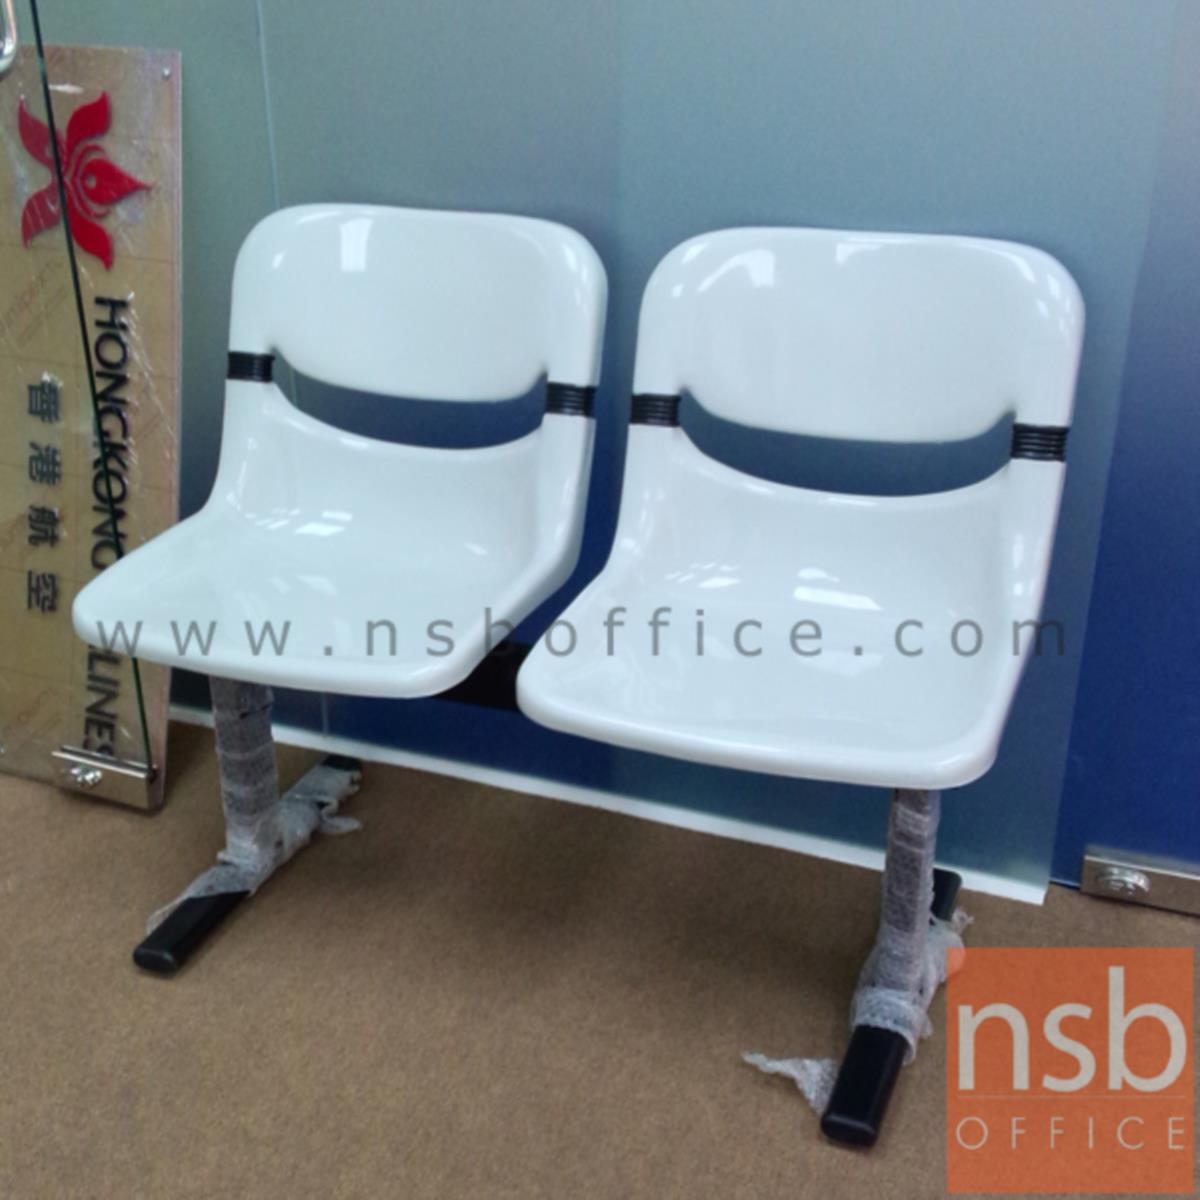 เก้าอี้นั่งคอยเฟรมโพลี่ รุ่น B890 2 ,3 ,4 ที่นั่ง ขนาด 101W ,153.5W ,206.5W cm. ขาเหล็ก